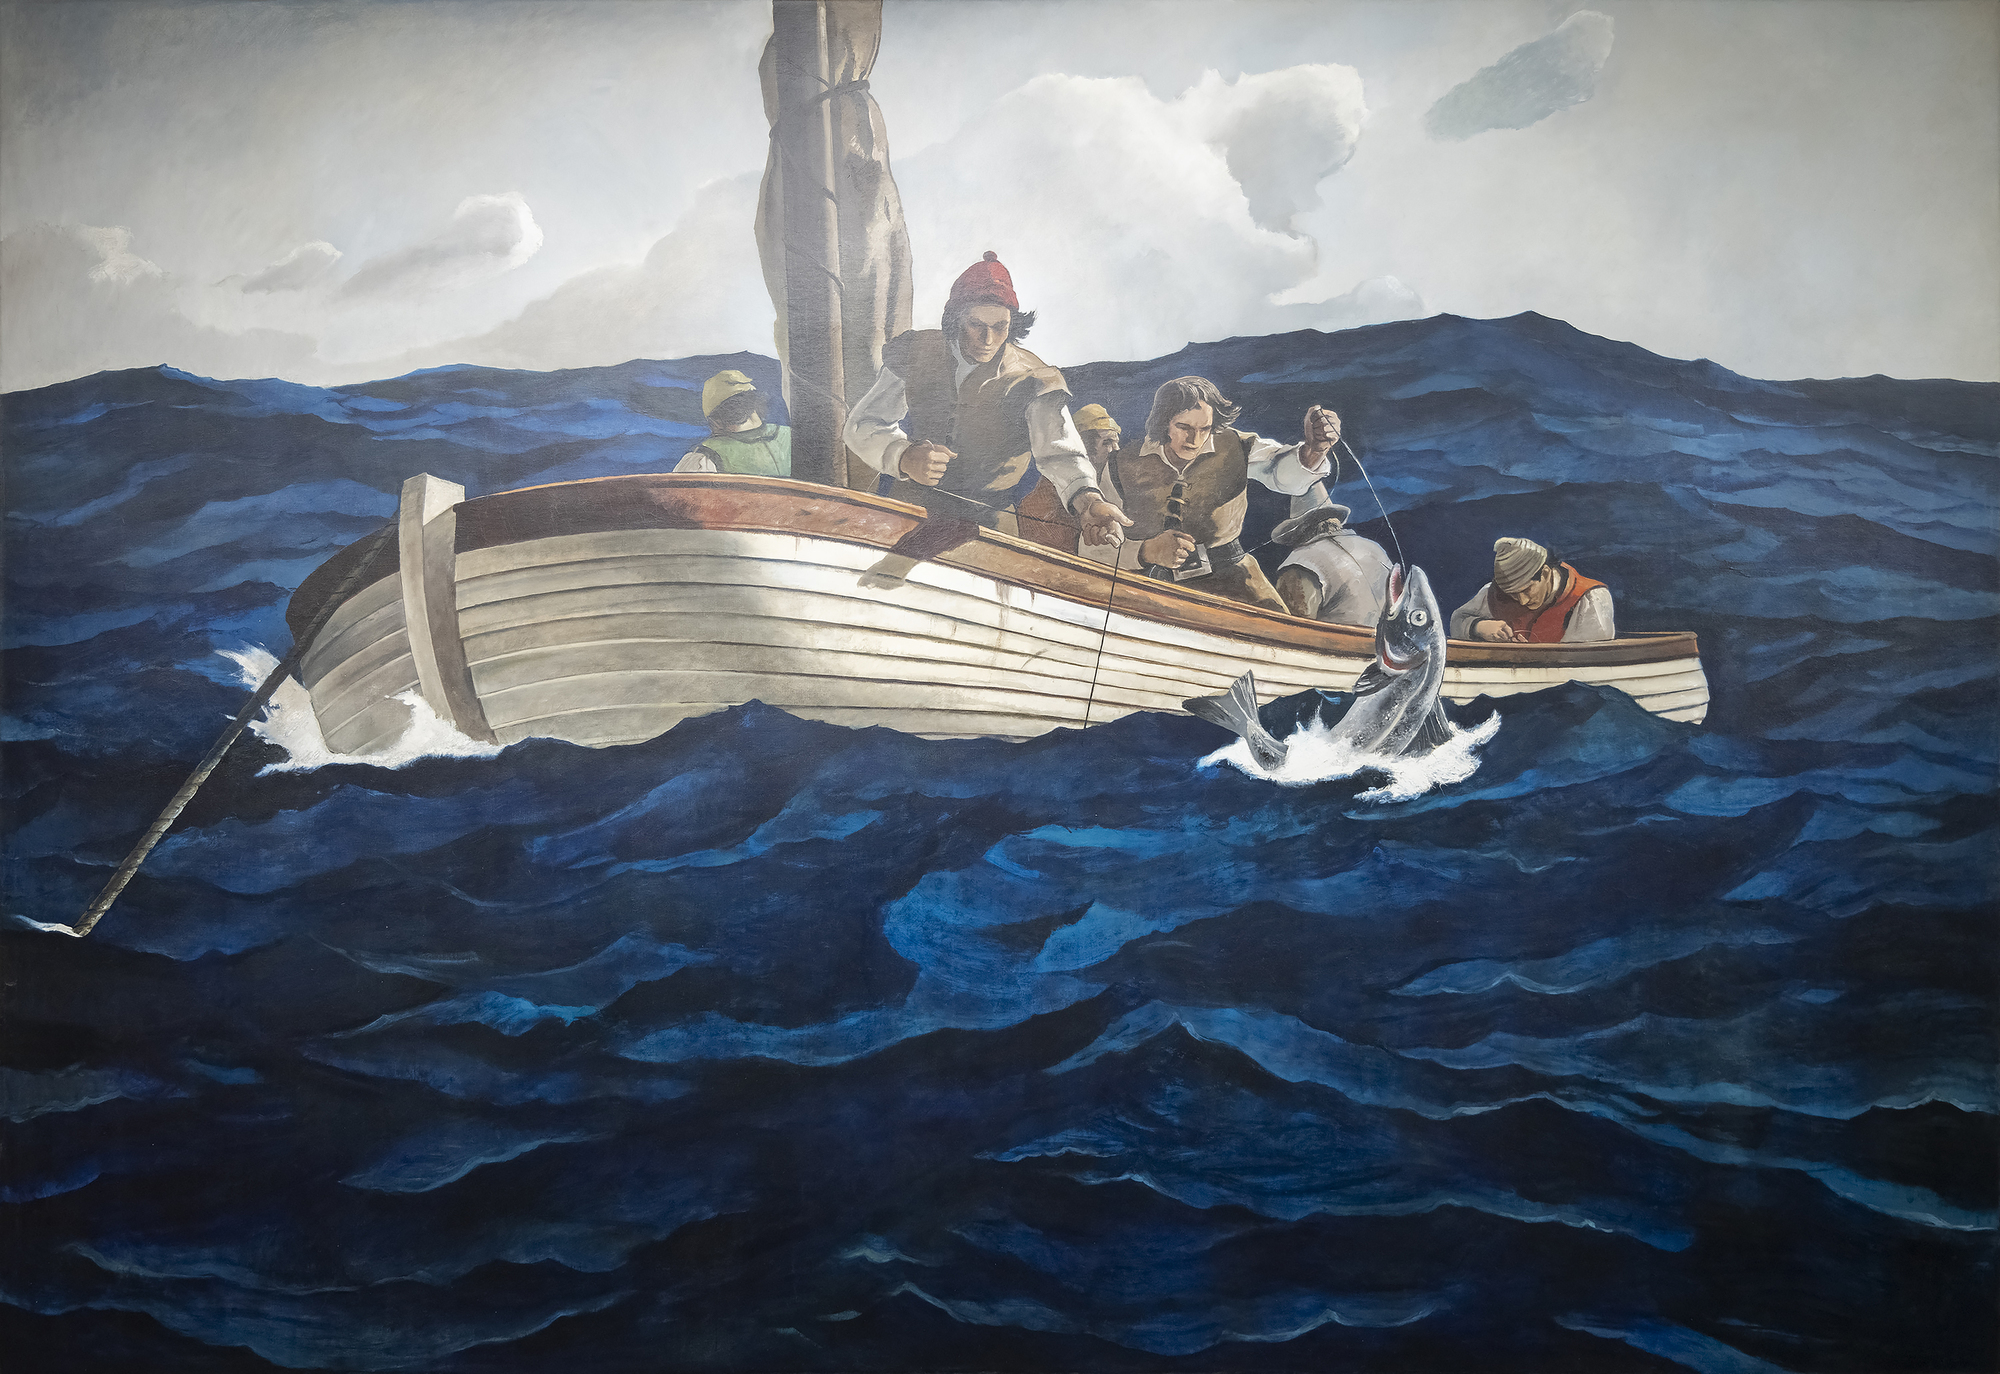 ブランディワイン・リバー美術館が編纂したカタログ・レゾネによると、『Puritan Cod Fishers』の下絵は、N. C. ワイエスが1945年10月に亡くなる前に完成させたものである。この項目には、スケッチの画像、画家の碑文、タイトル「Puritan Cod Fishers」が記録されており、カタログでは「代替」とされている。いずれにせよ、この大きなキャンバスはアンドリュー・ワイエスの手によって描かれたユニークな作品であり、父親のデザインと構図が、優れた息子の手によって結実した、明確な共同作業であったと後にアンドリュー・ワイエスは回想している。アンドリューにとって、それは深く感じられ、感動的な体験だったに違いない。父親の細部と本物へのこだわりを考えると、小さな帆船のラインは16世紀に使われていたエシャロットを表している。その一方で、アンドリューは、父親がしたかもしれない以上に、落ち着きのない海の色合いを深めたと思われ、その選択は、作業の危険な性質を適切に高めている。